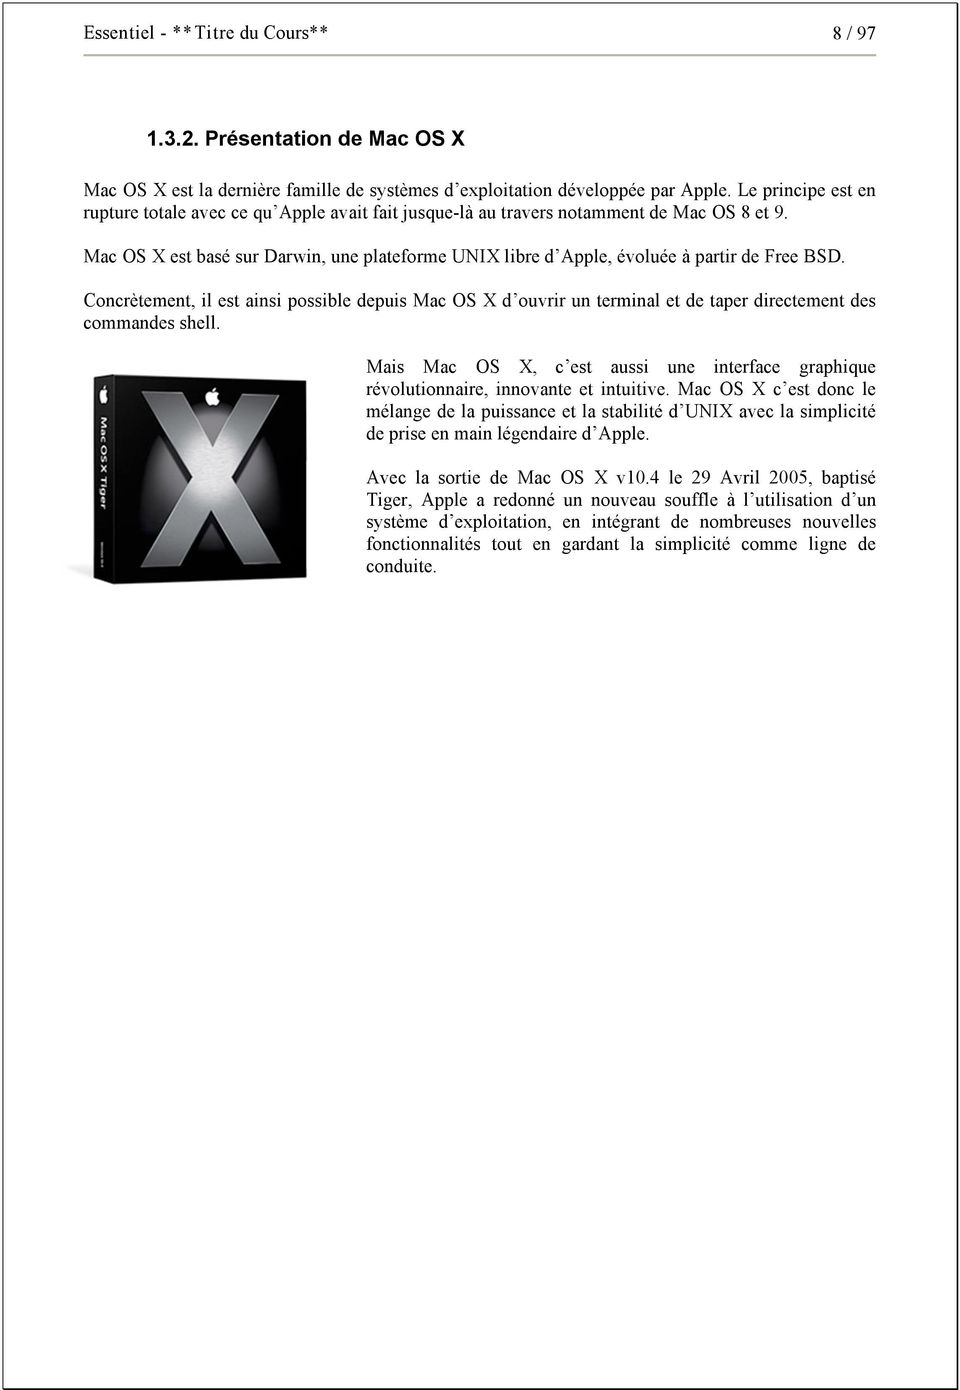 Mac OS X est basé sur Darwin, une plateforme UNIX libre d Apple, évoluée à partir de Free BSD.